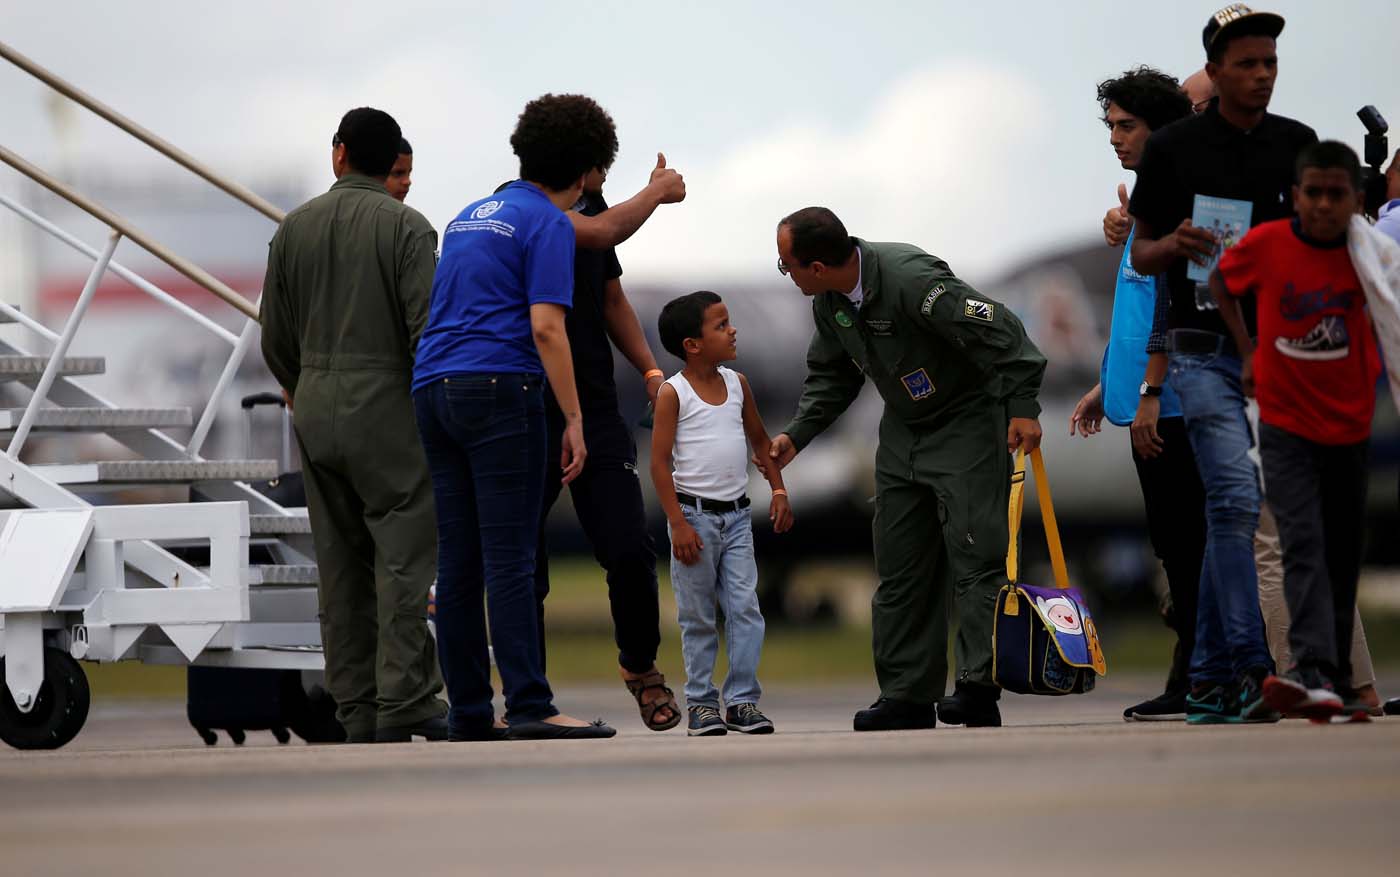 Fuerza Aérea brasileña traslada a migrantes venezolanos en medio de crisis (fotos)